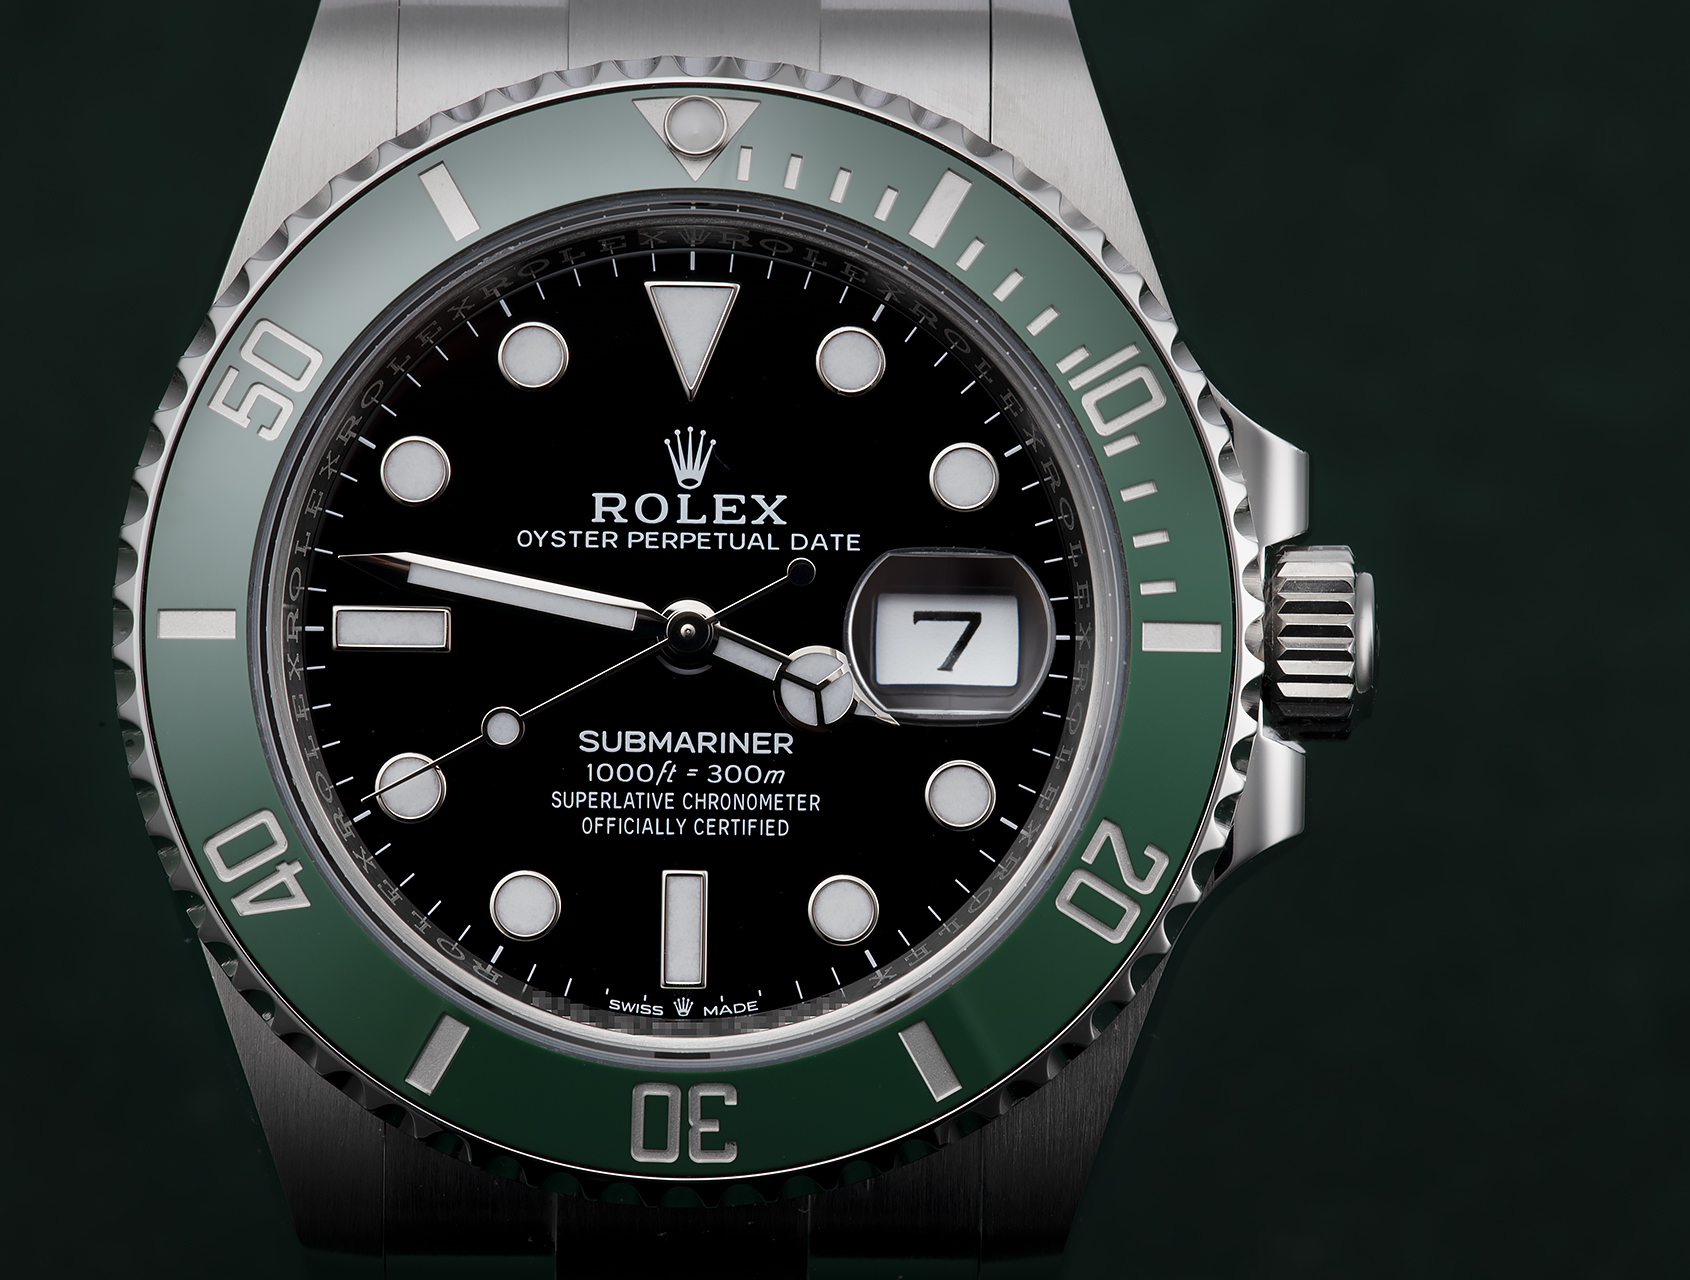 Rolex Submariner Date 126610lv